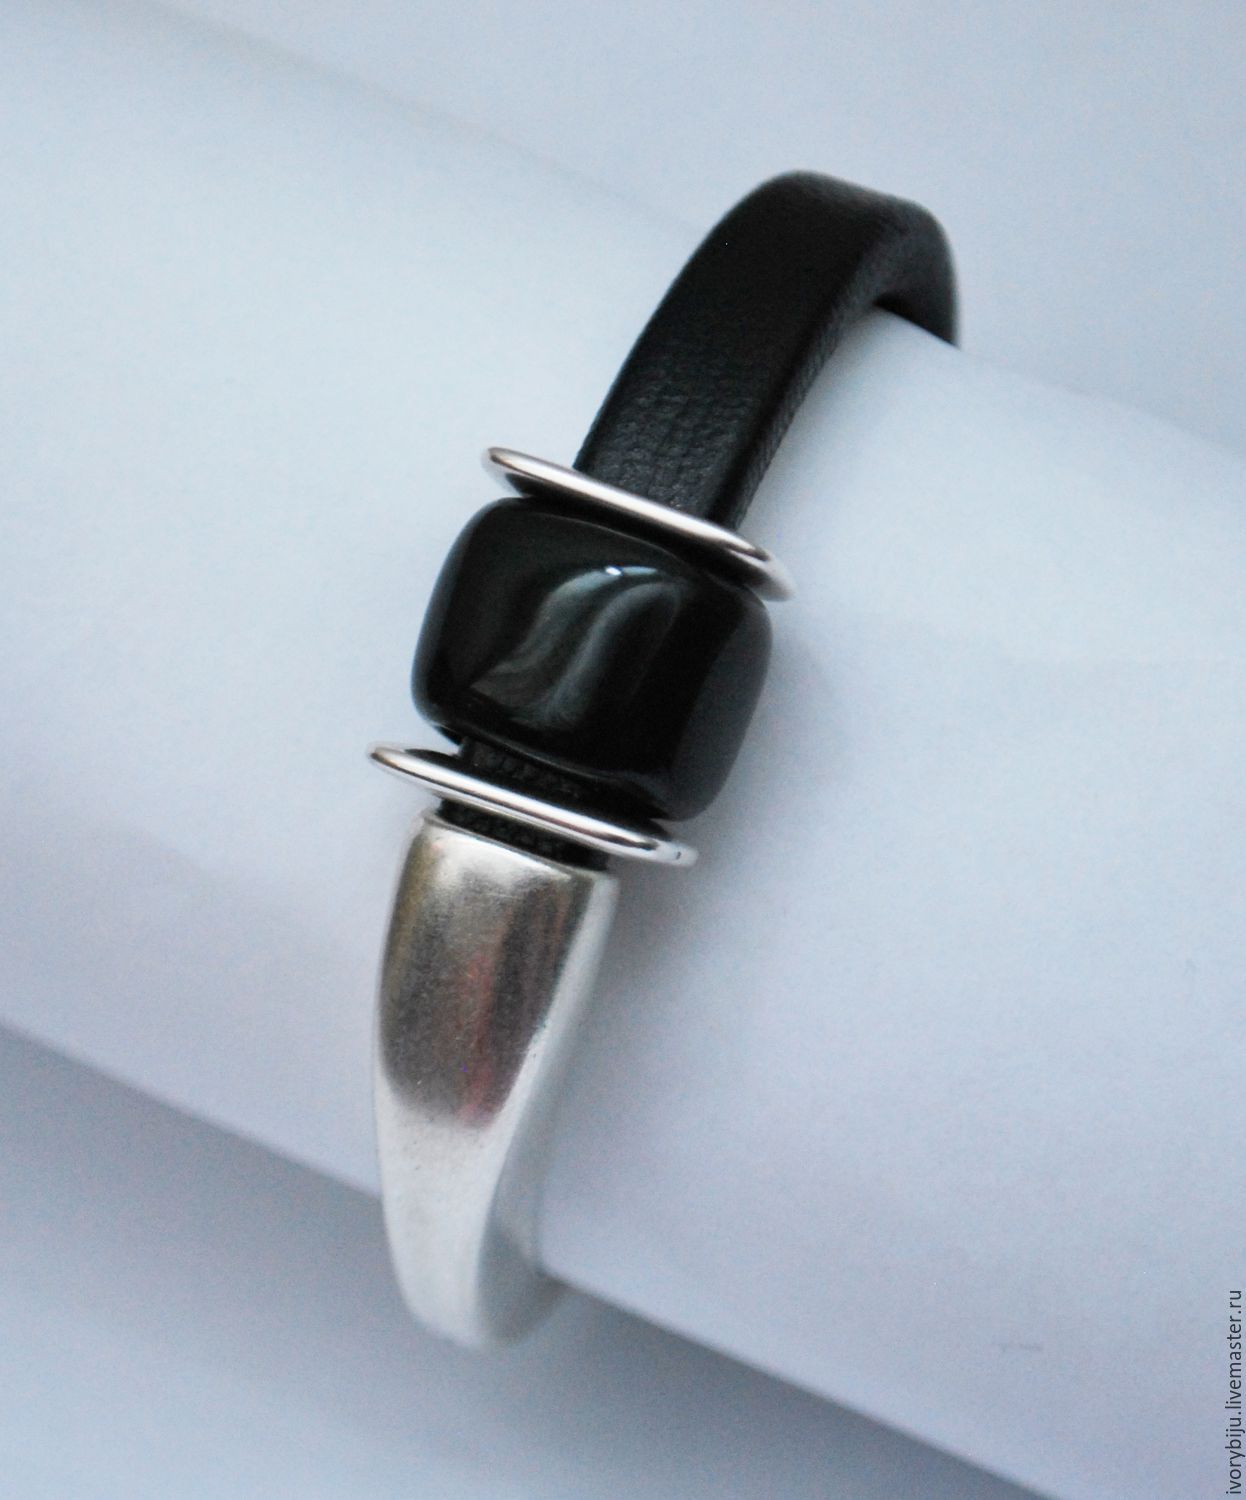 Черный браслет регализ из кожаного фактурного шнура на полуоснове